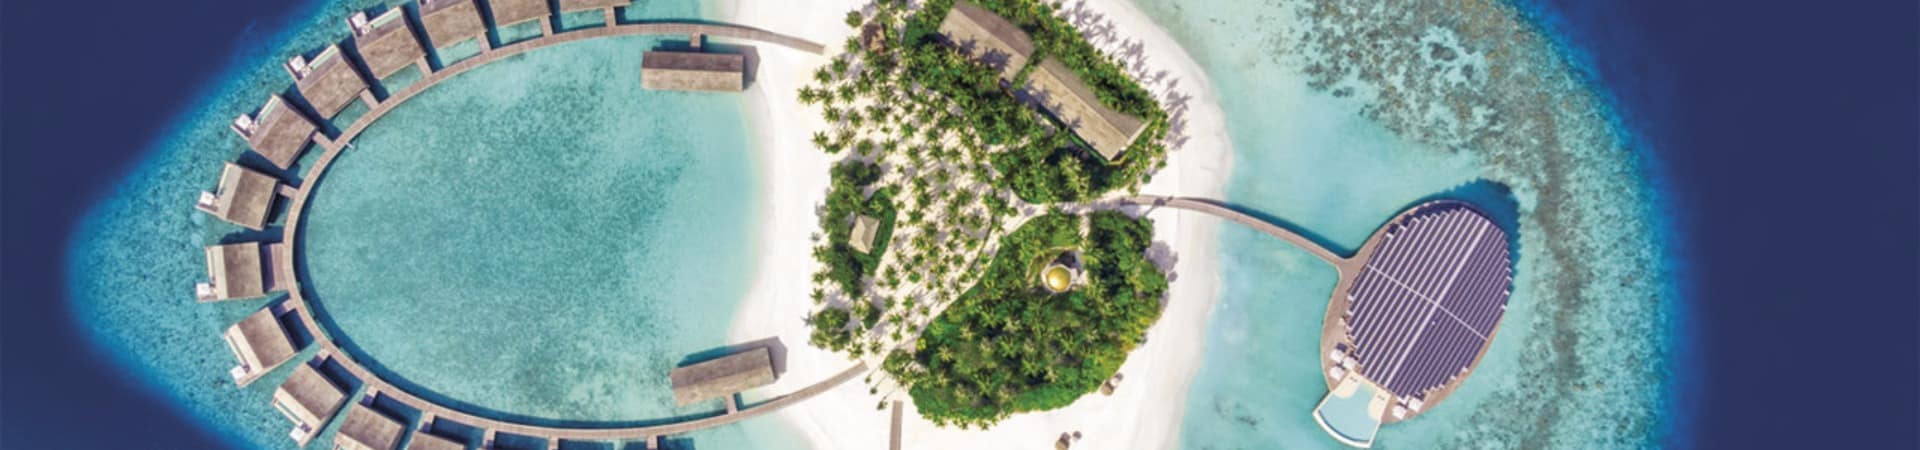 Kudadoo maldivas vista aerea